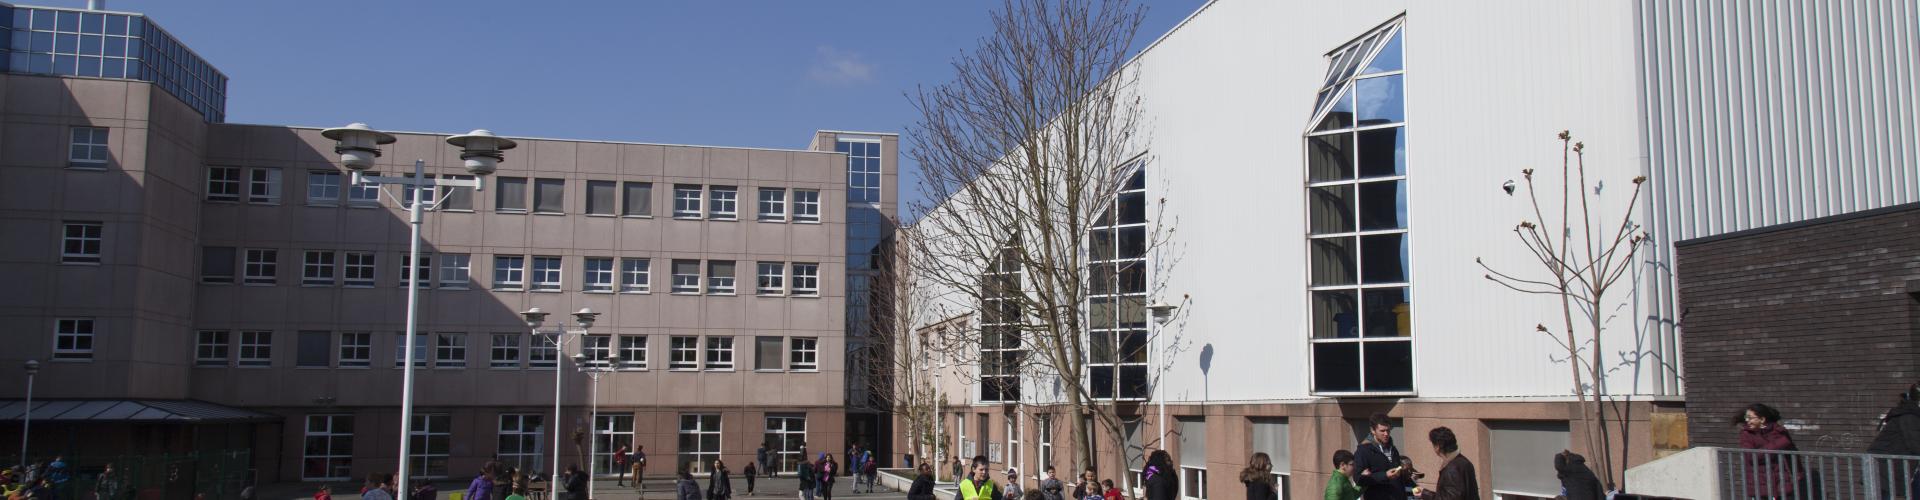 Campus Spoor West Anderlecht